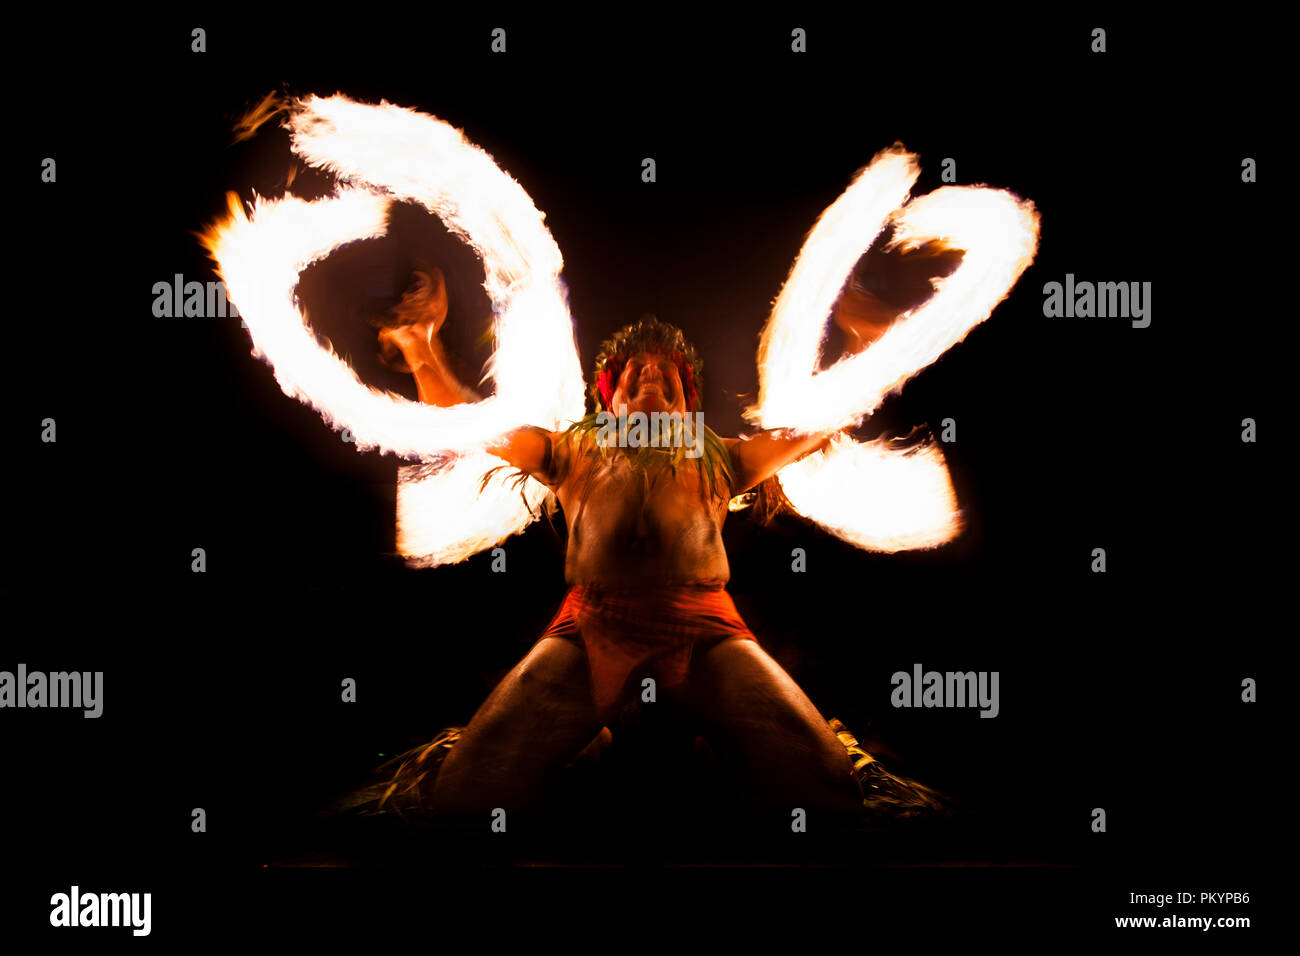 Ein Feuer - Messer Tänzerin führt in zentrale Apia für teuila Festival 2012. Stockfoto